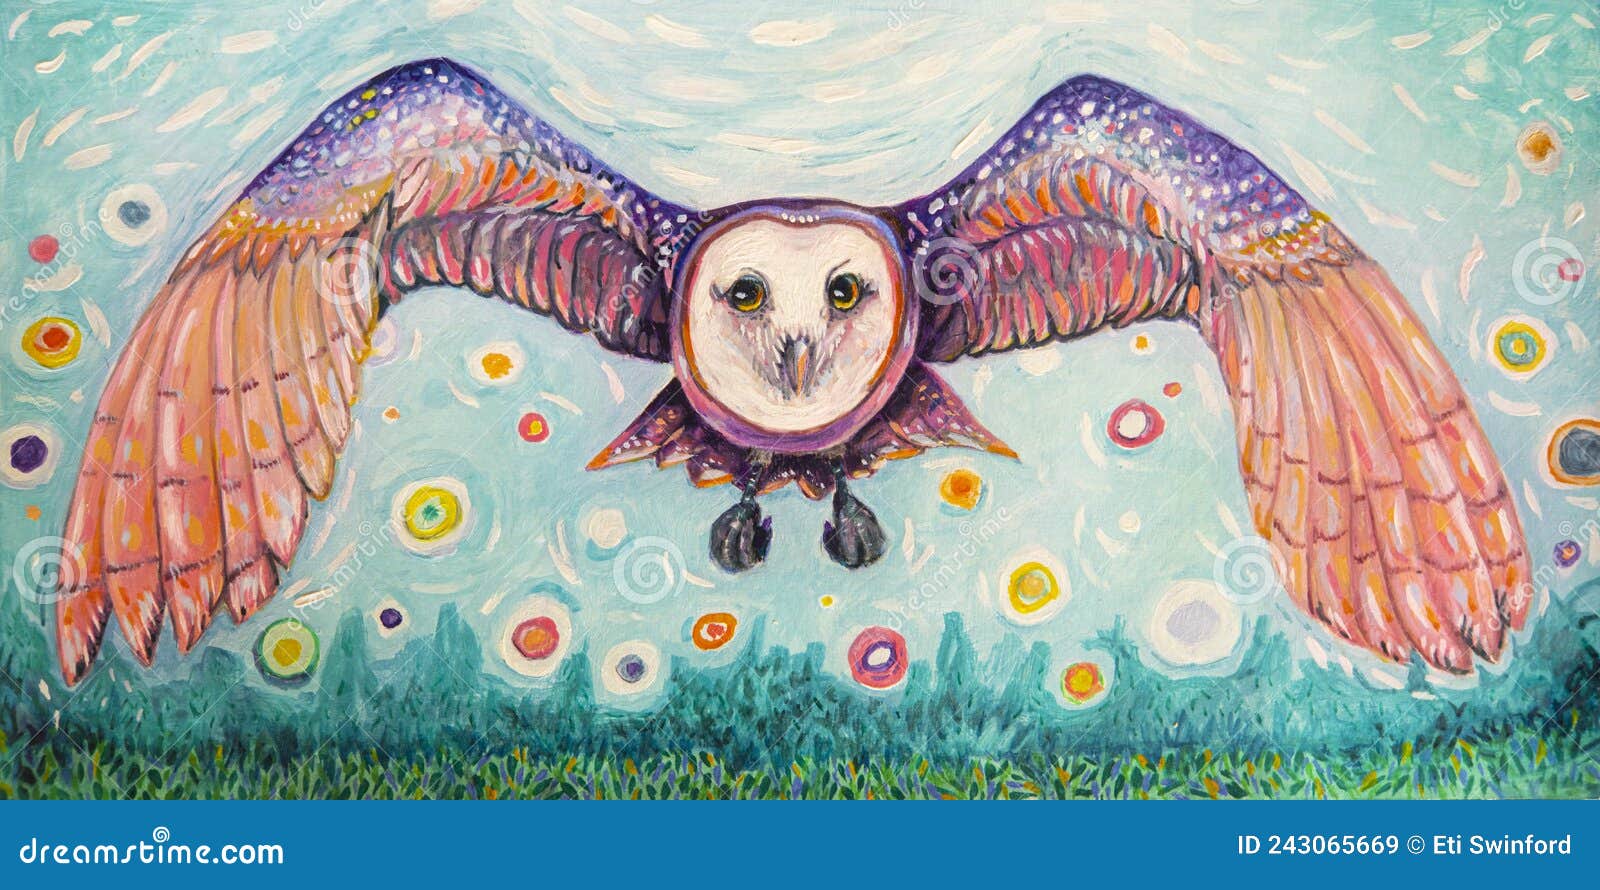 whimsical owl gouach art